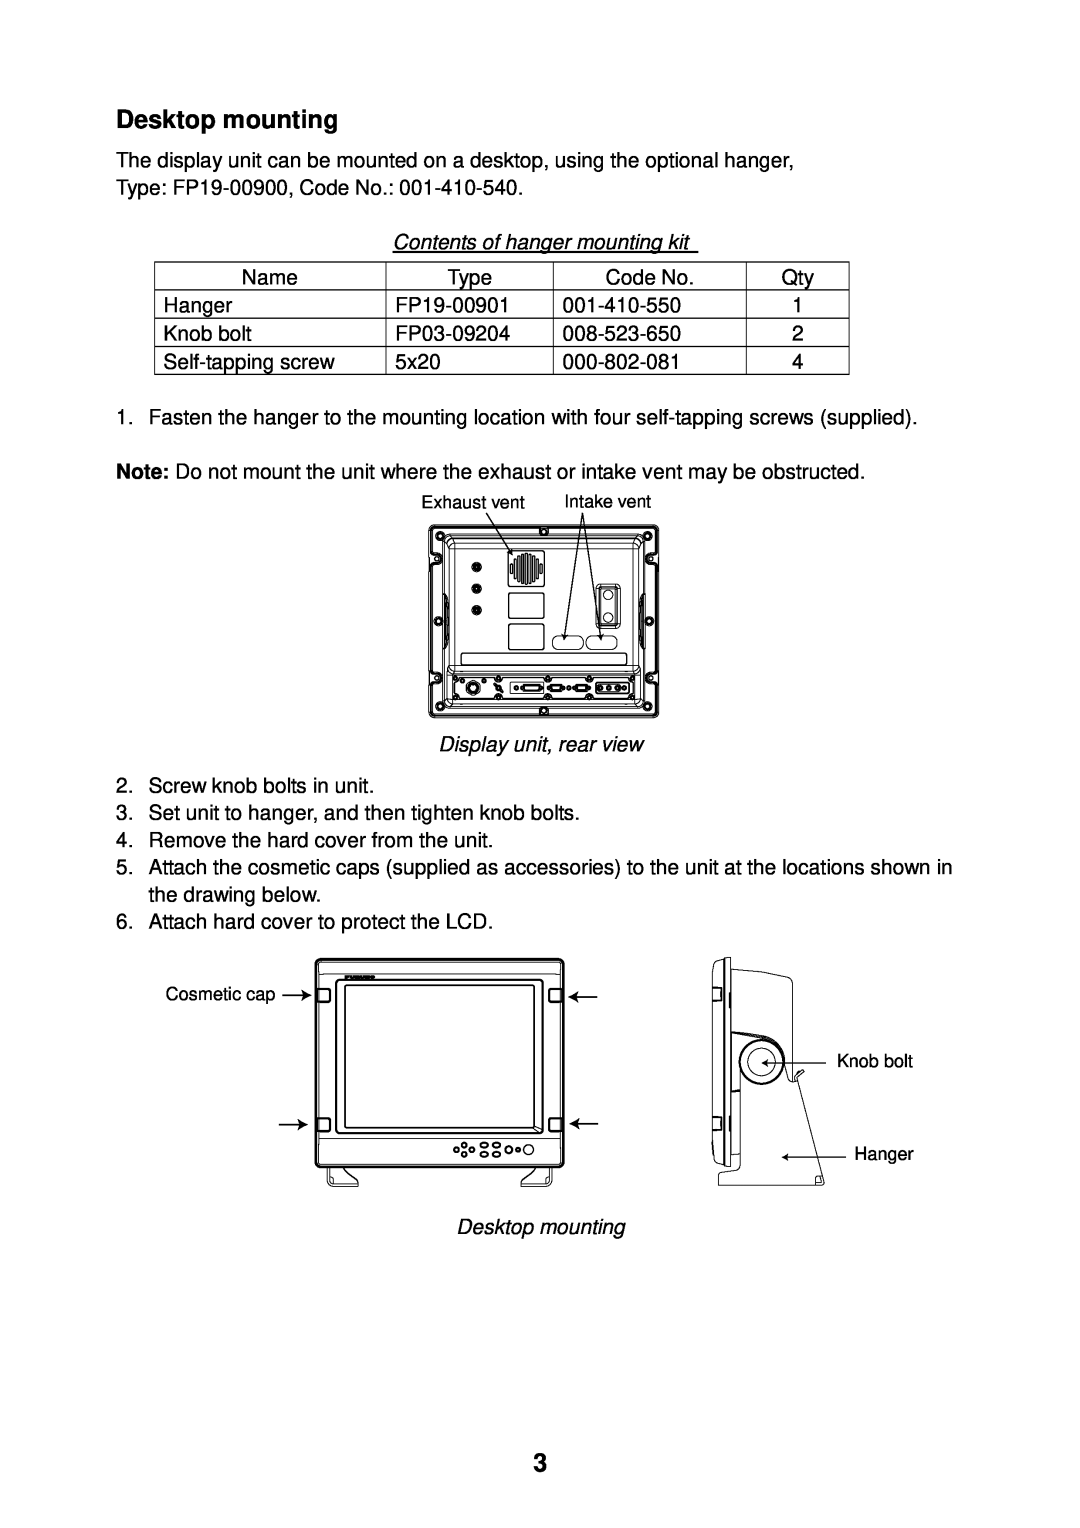 Furuno MU-155C manual Desktop mounting, Contents of hanger mounting kit, Display unit, rear view 